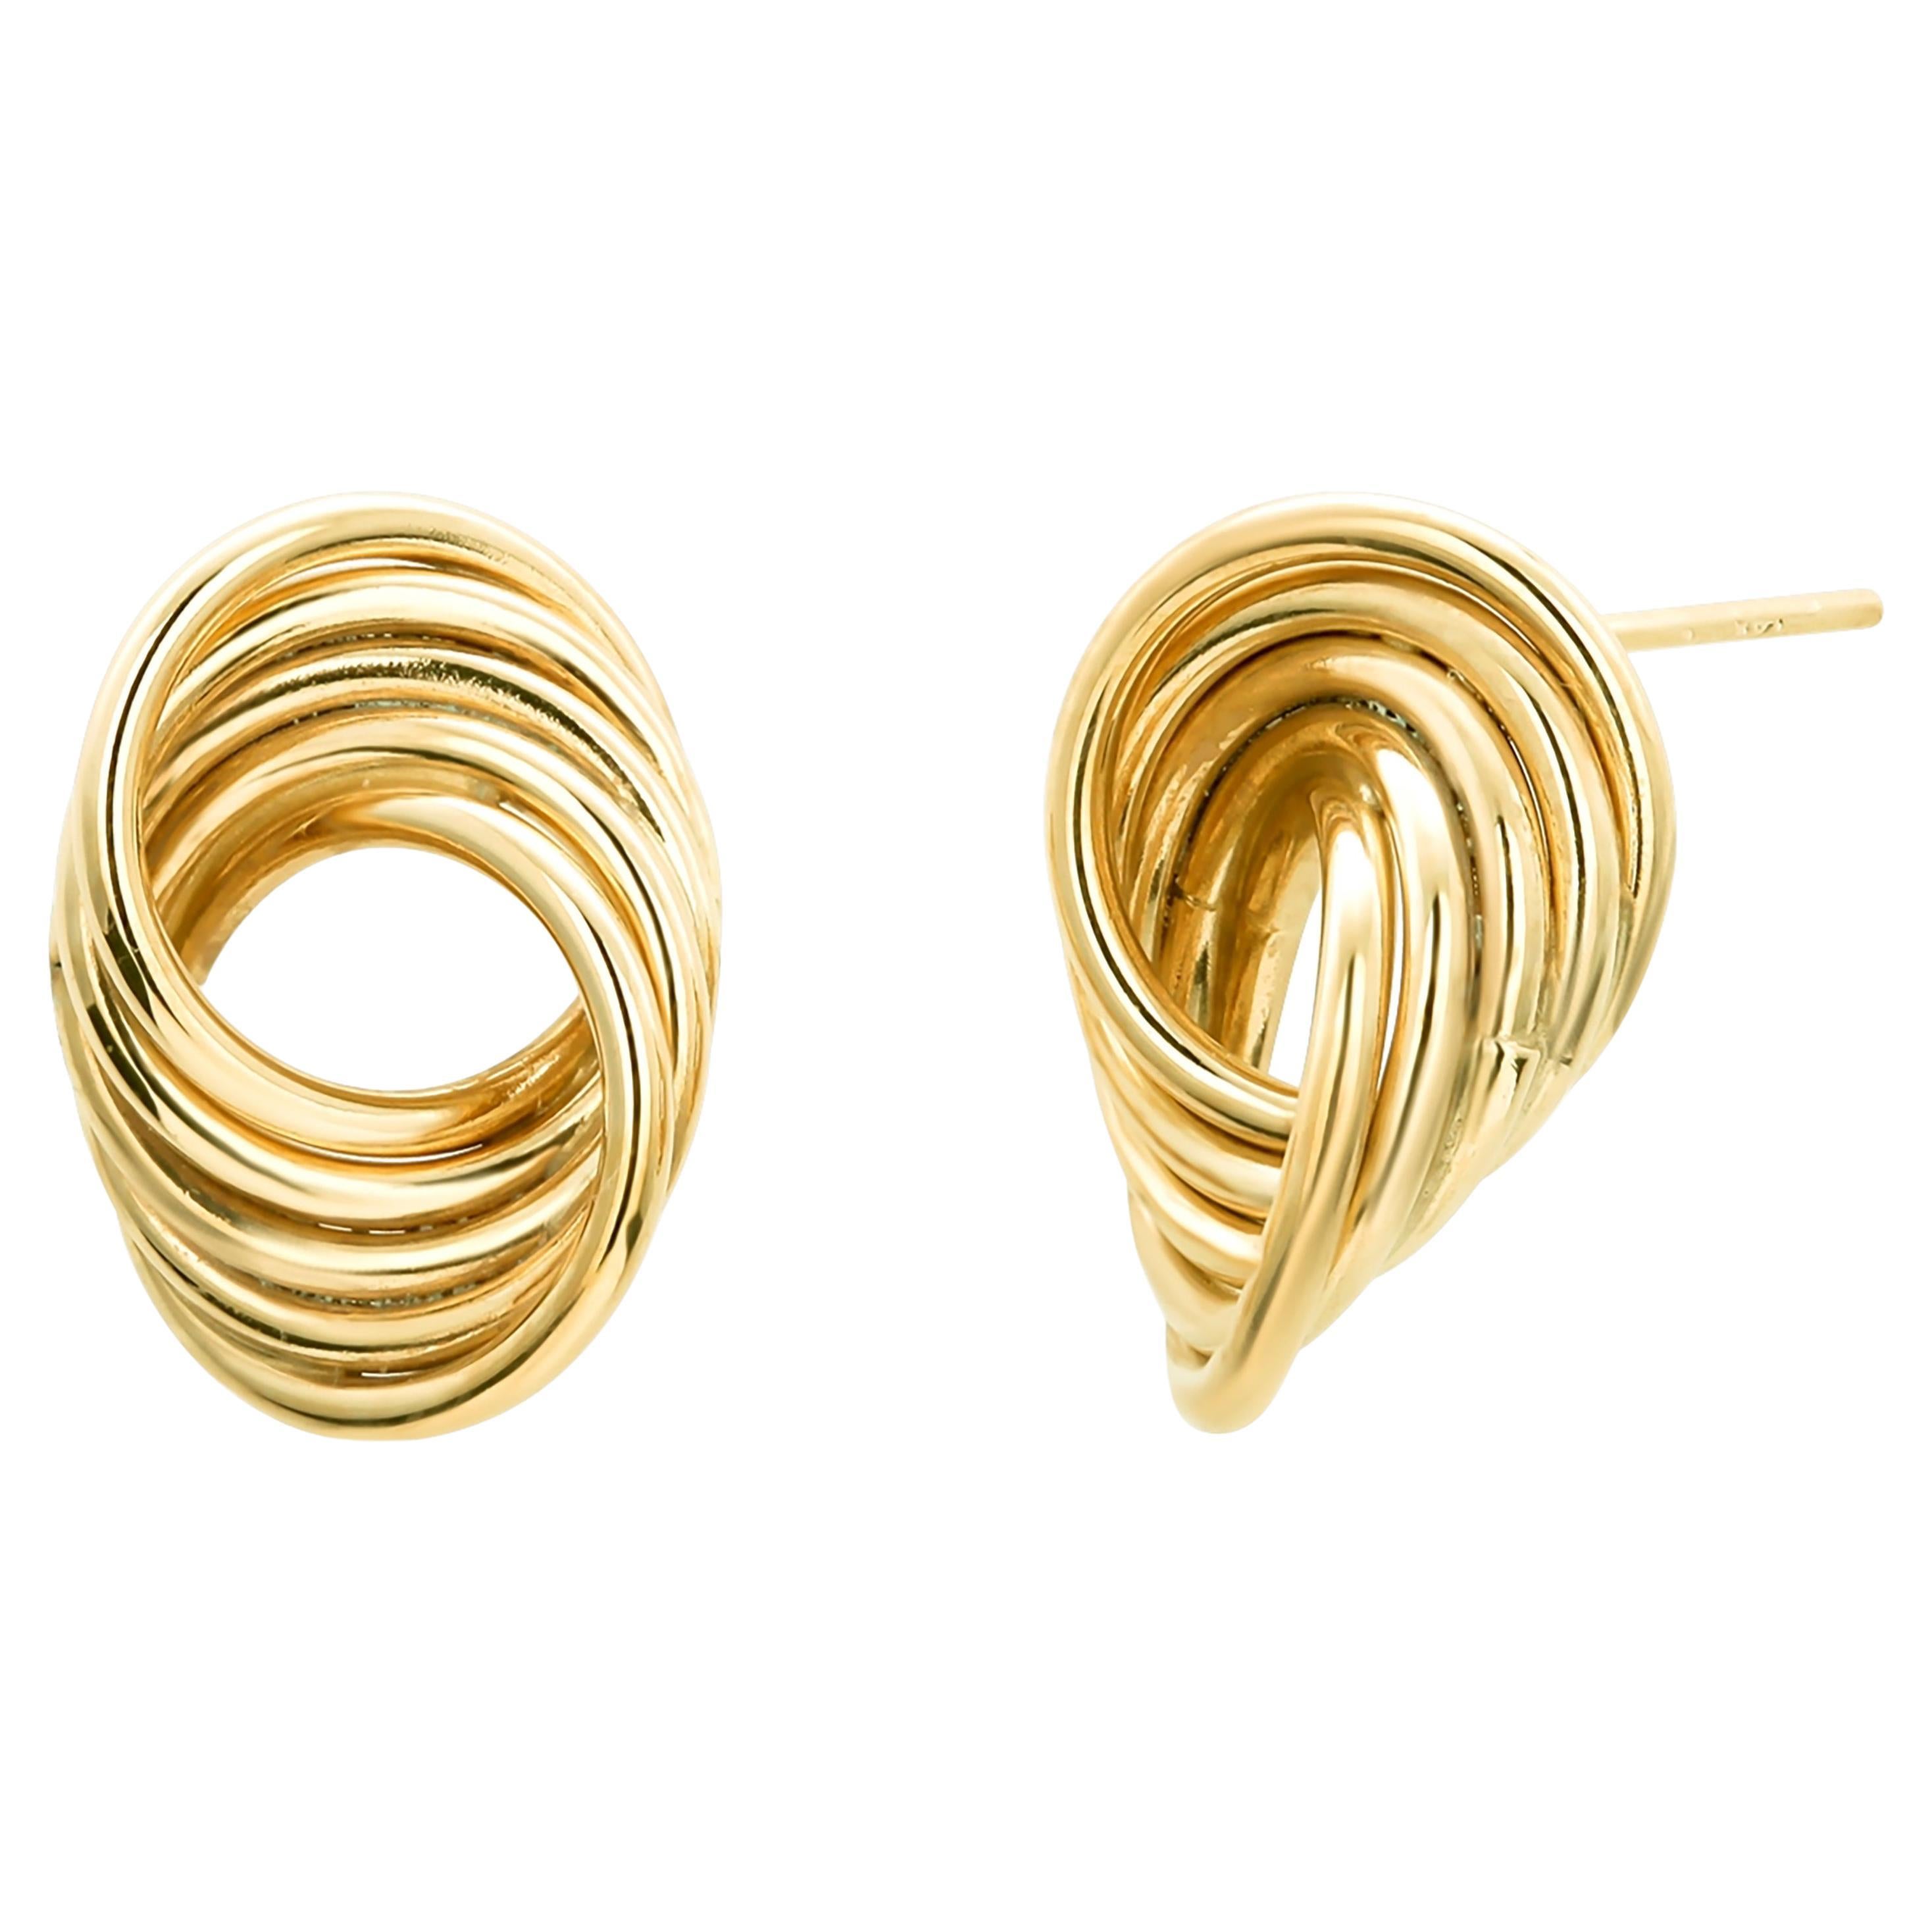 Fourteen Karat Yellow Gold Swirl Shaped Modernist Stud Earrings